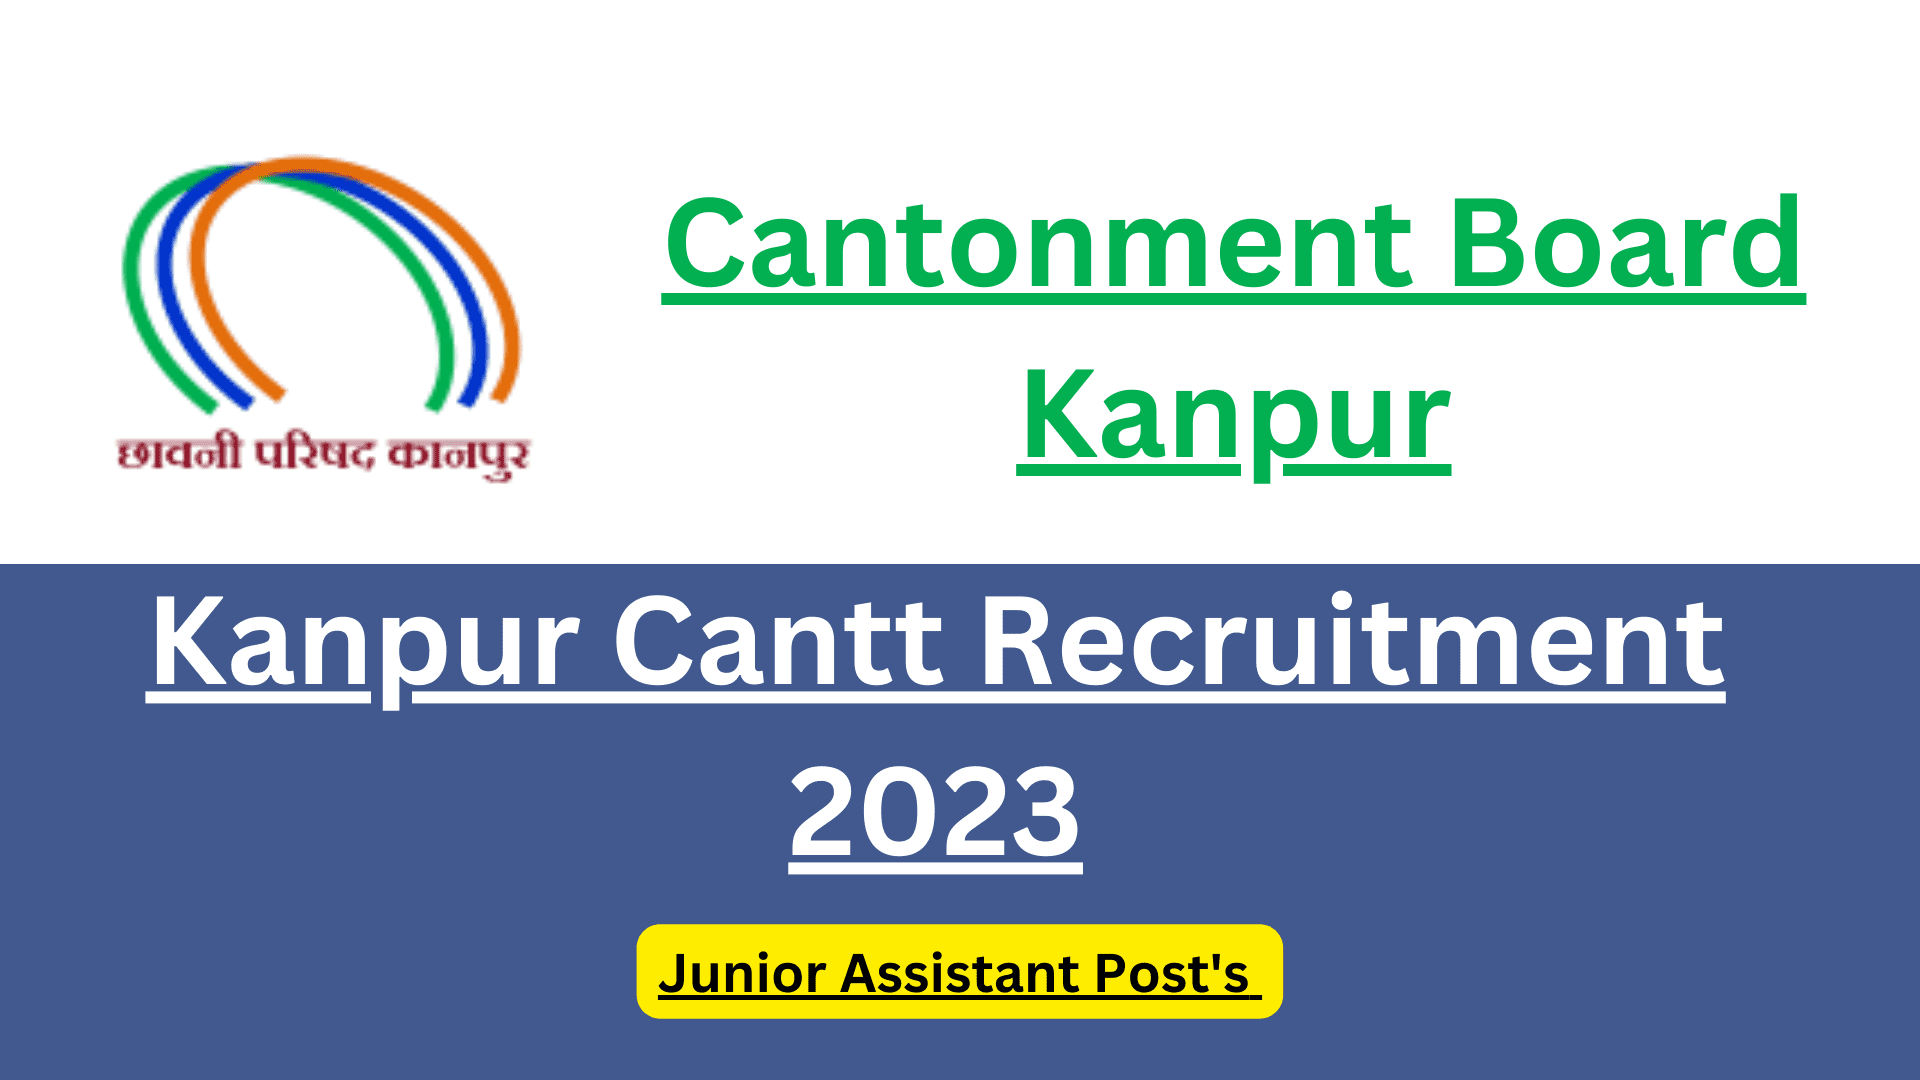 Kanpur Cantt Recruitment 2023